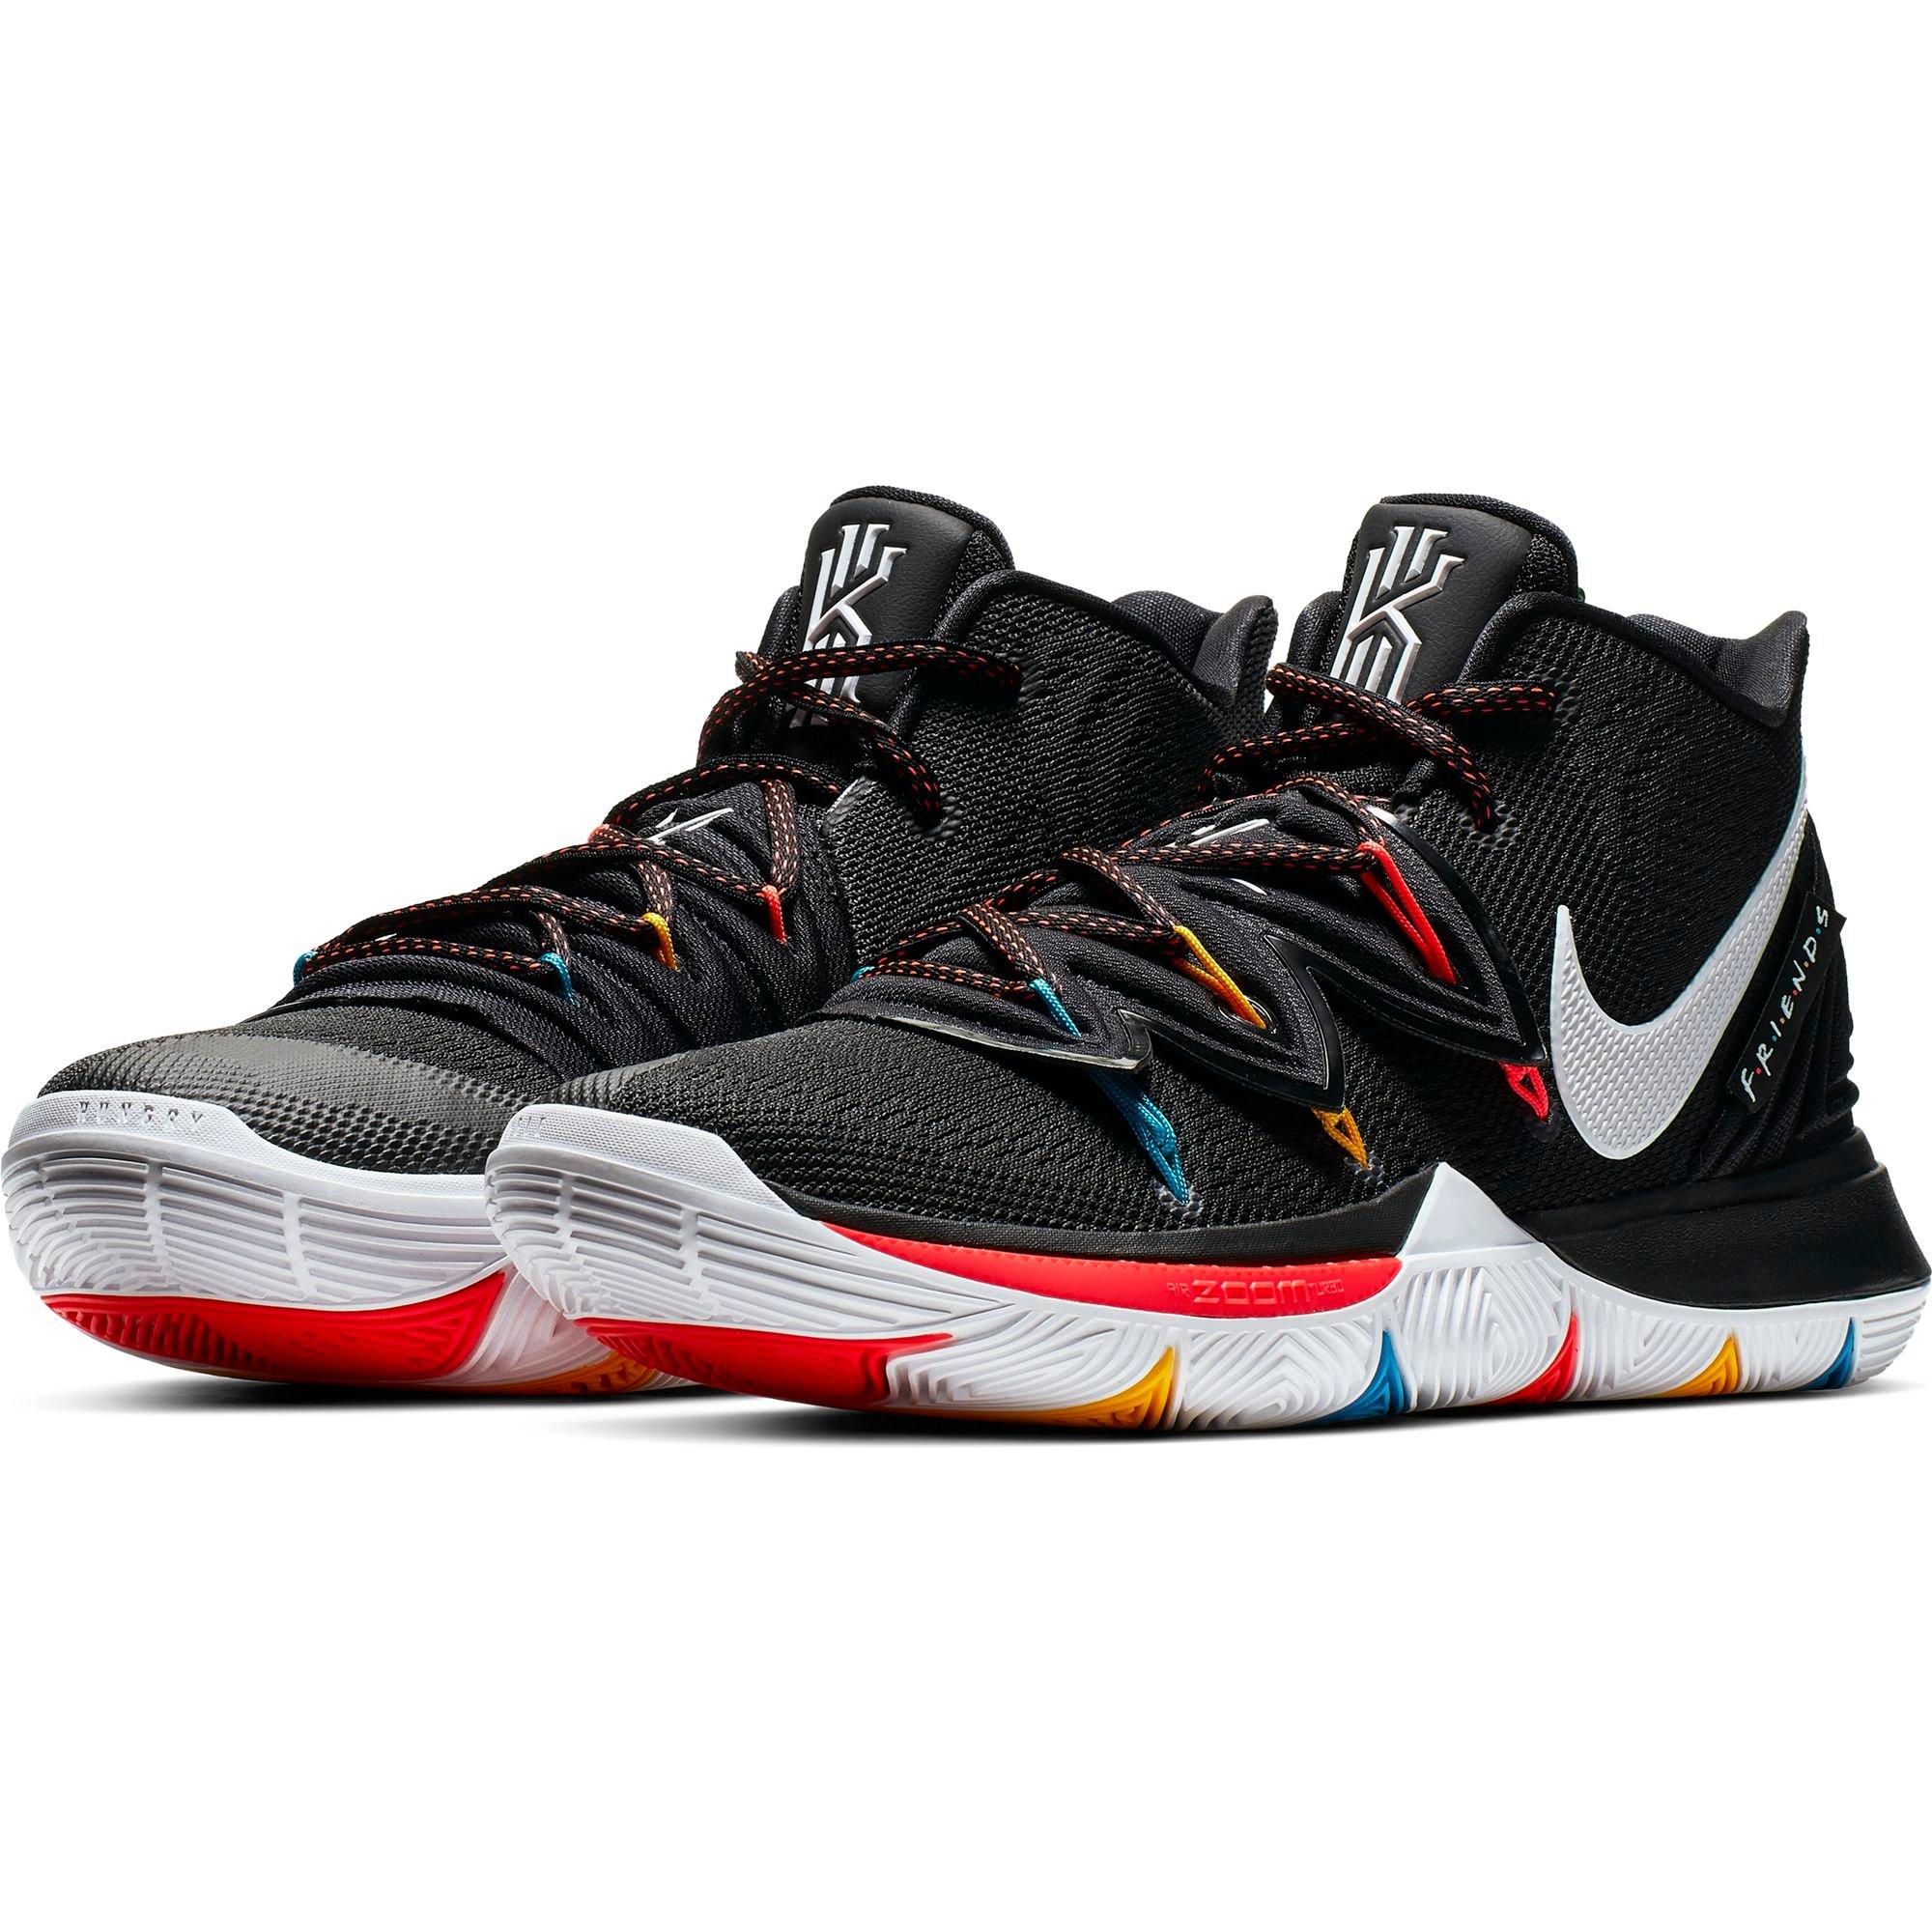 Sneaker Release: Nike Kyrie 5 “Black 